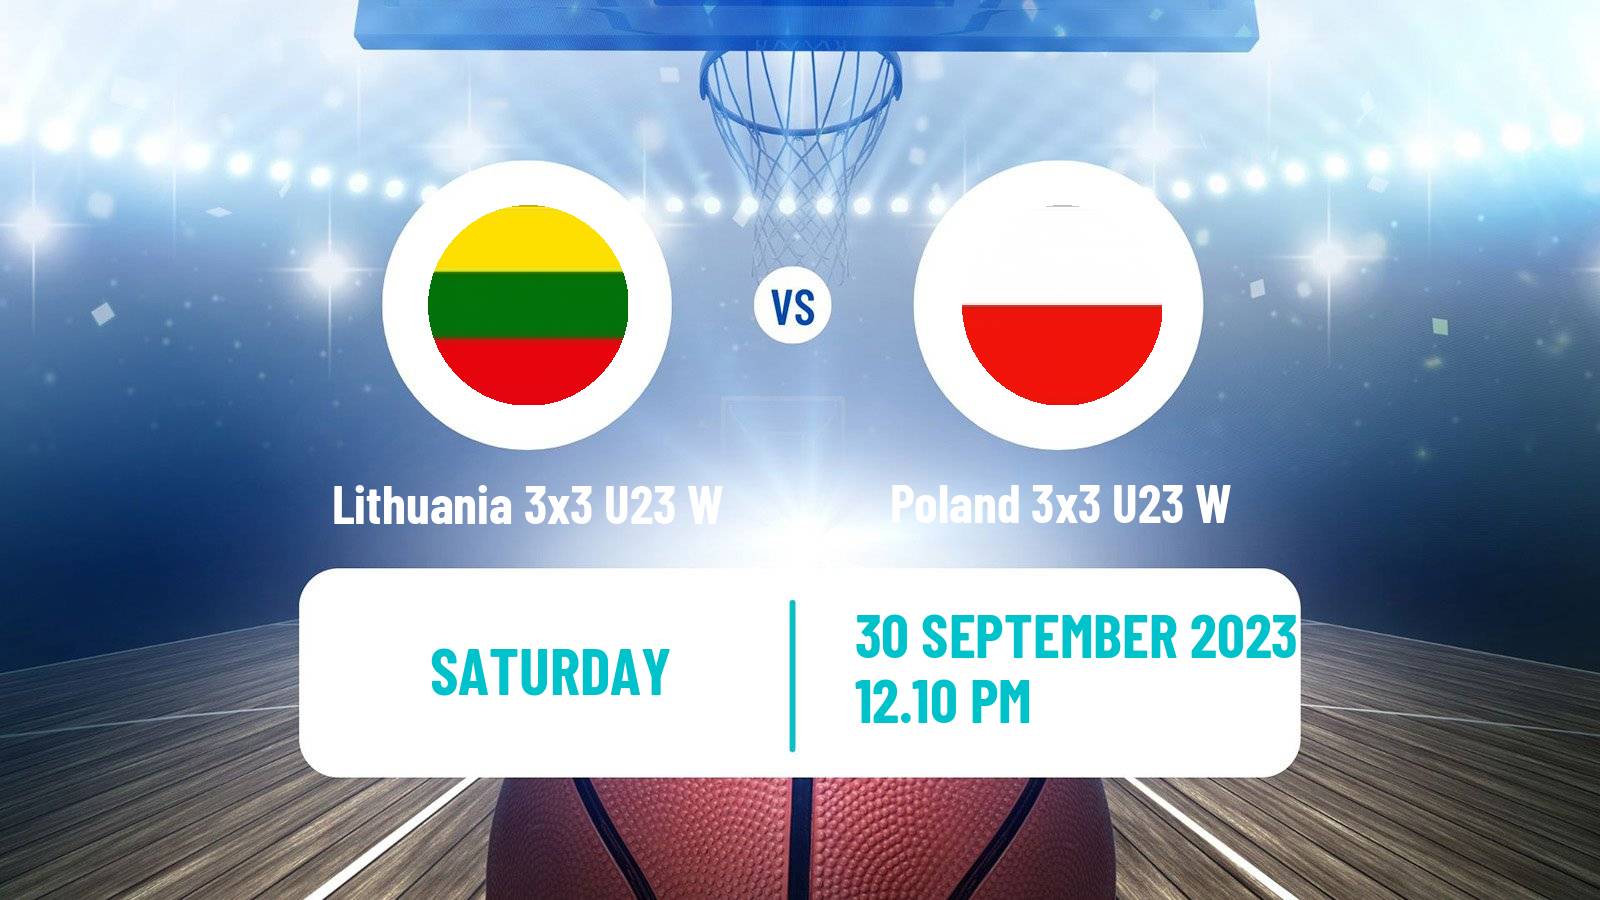 Basketball World Cup Basketball 3x3 U23 Women Lithuania 3x3 U23 W - Poland 3x3 U23 W